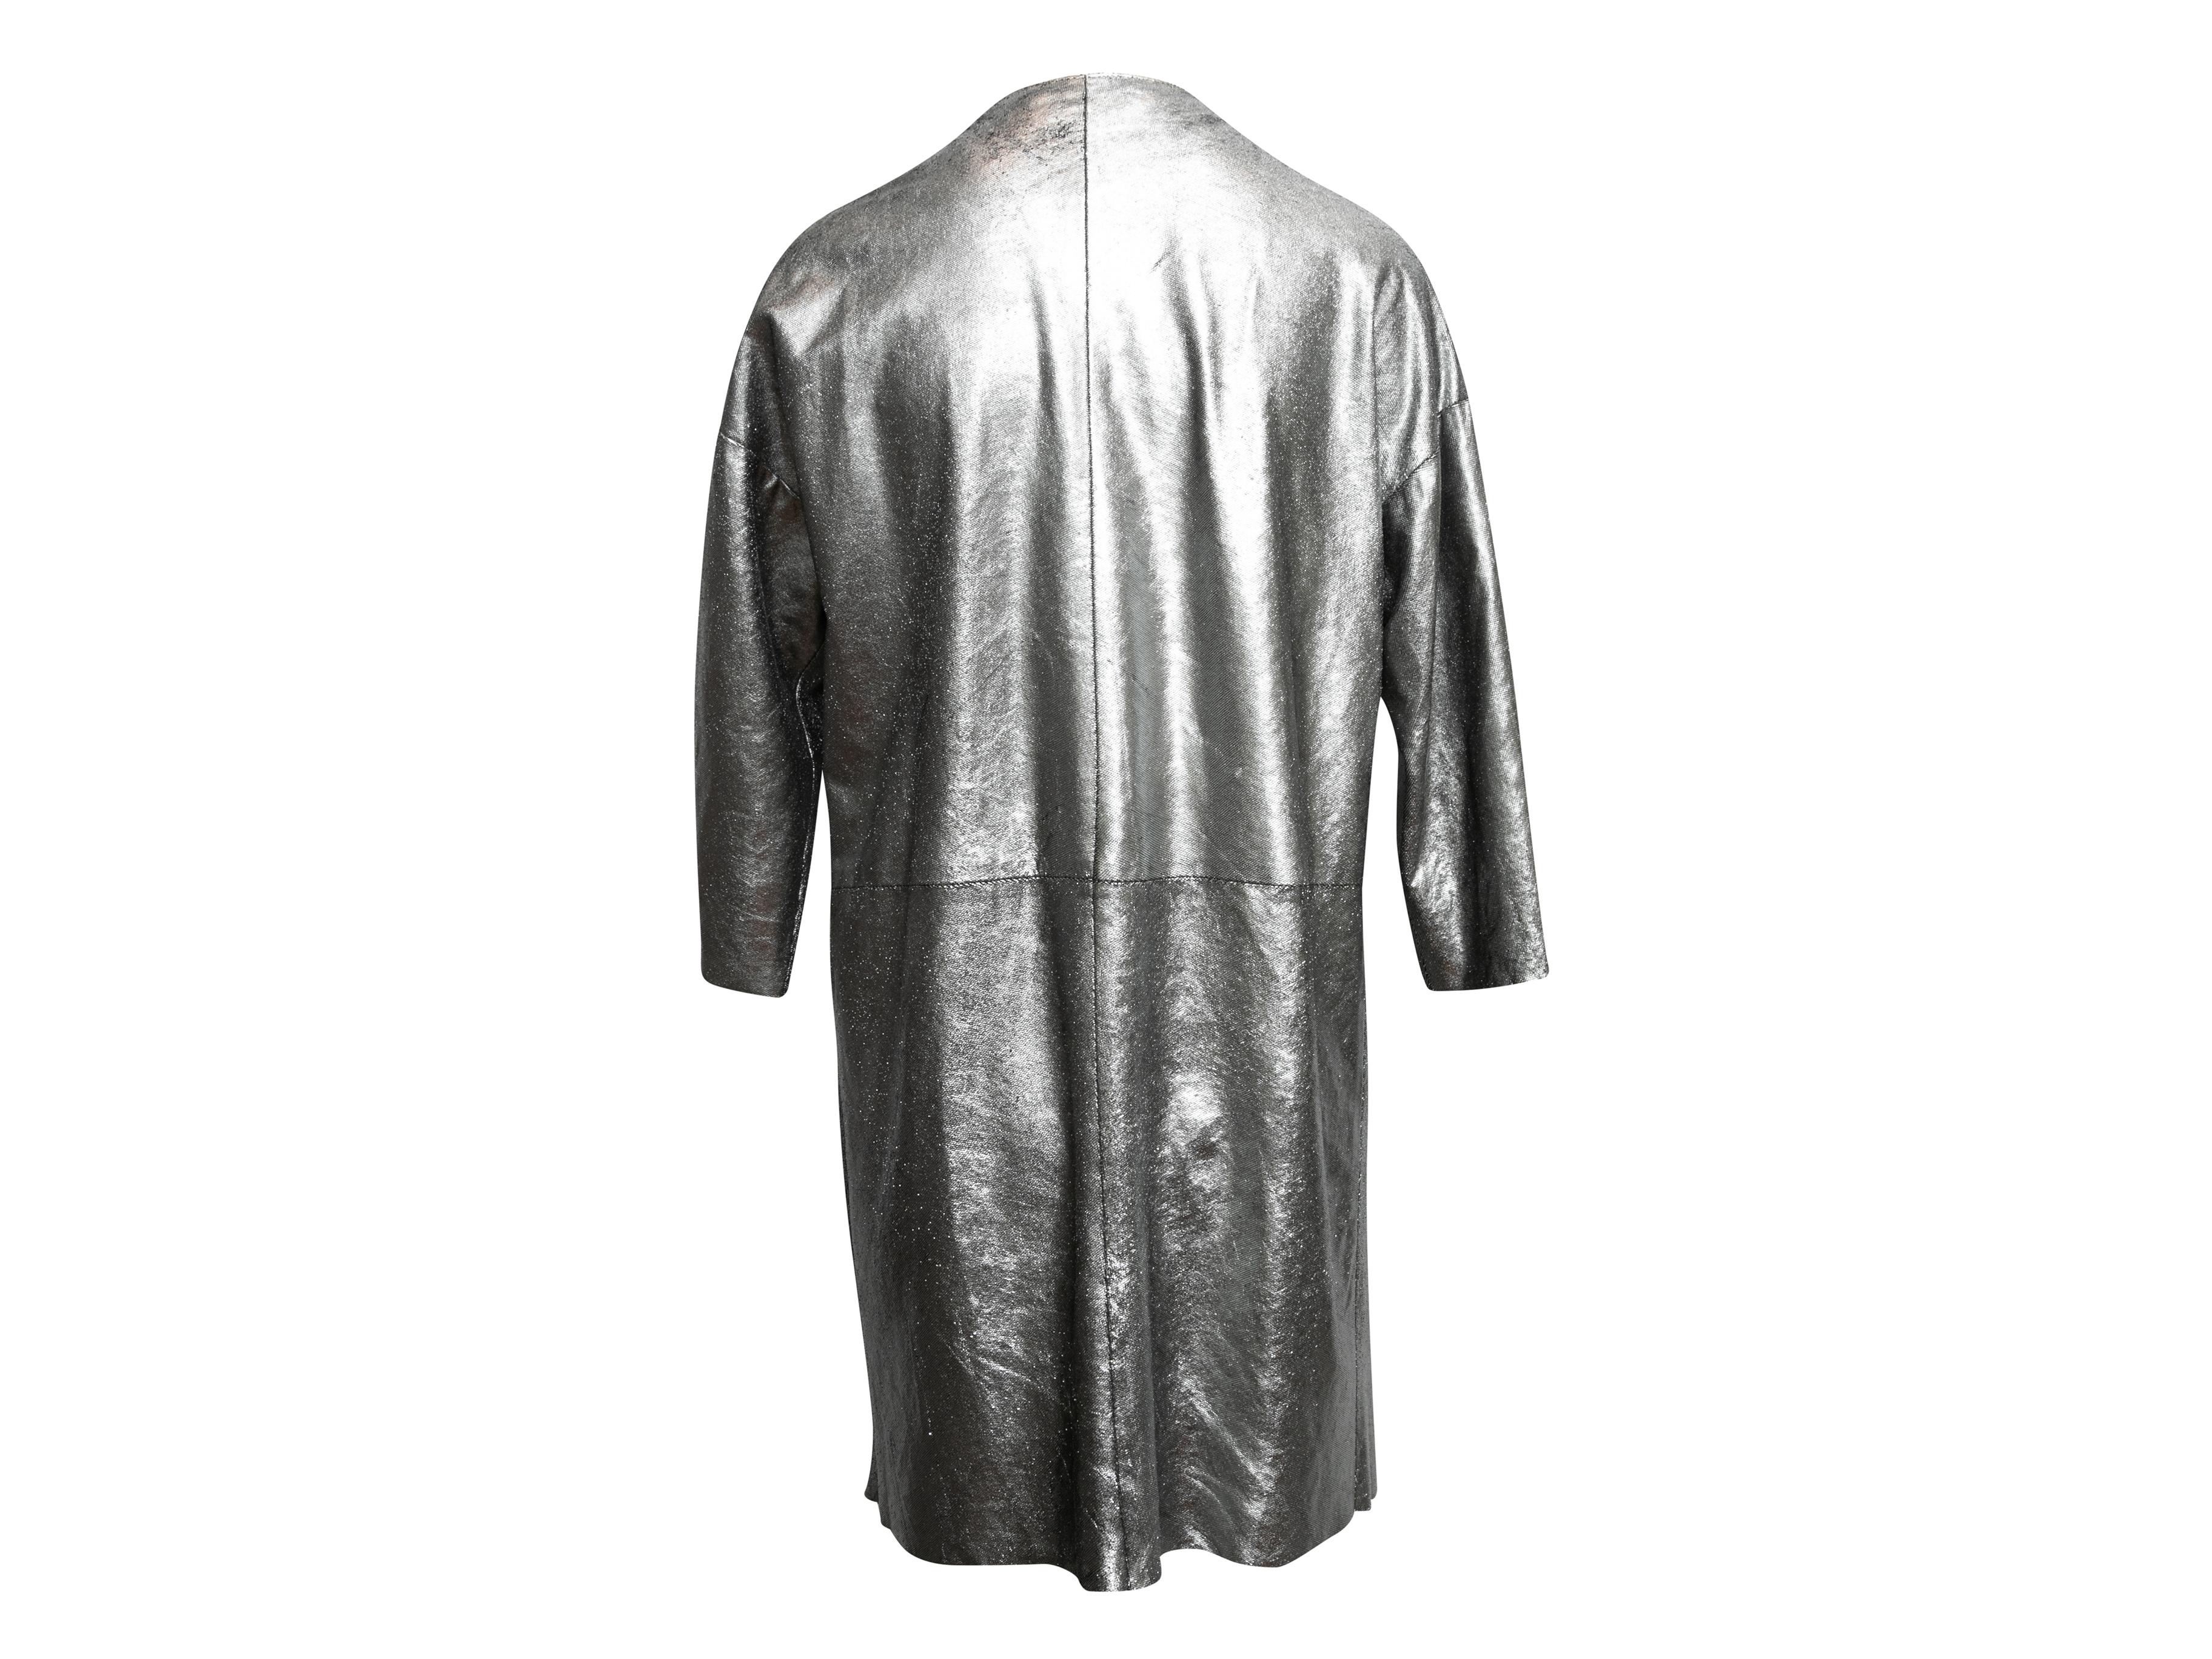 Silver Giorgio Brato Metallic Leather Jacket Size EU 44 For Sale 1